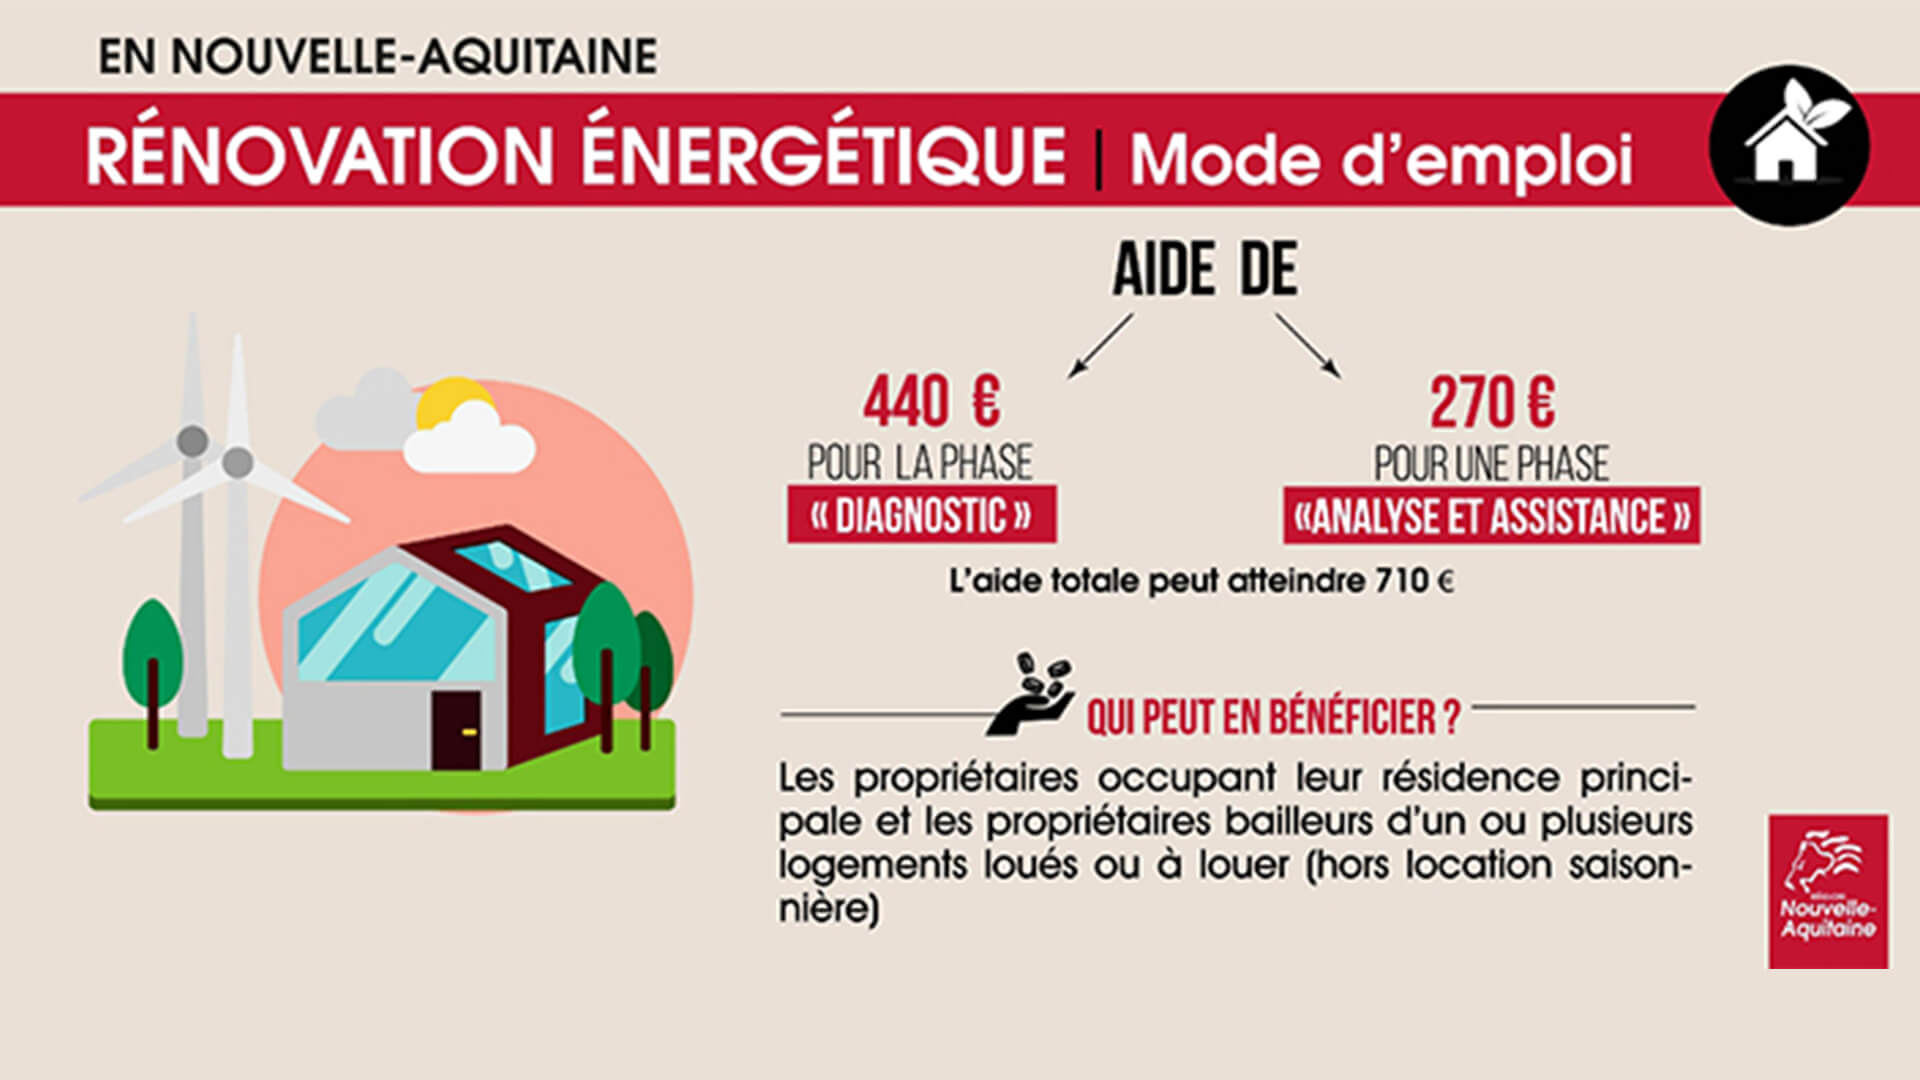 Nouvelle-Aquitaine : enveloppe d’1 million € pour la rénovation énergétique